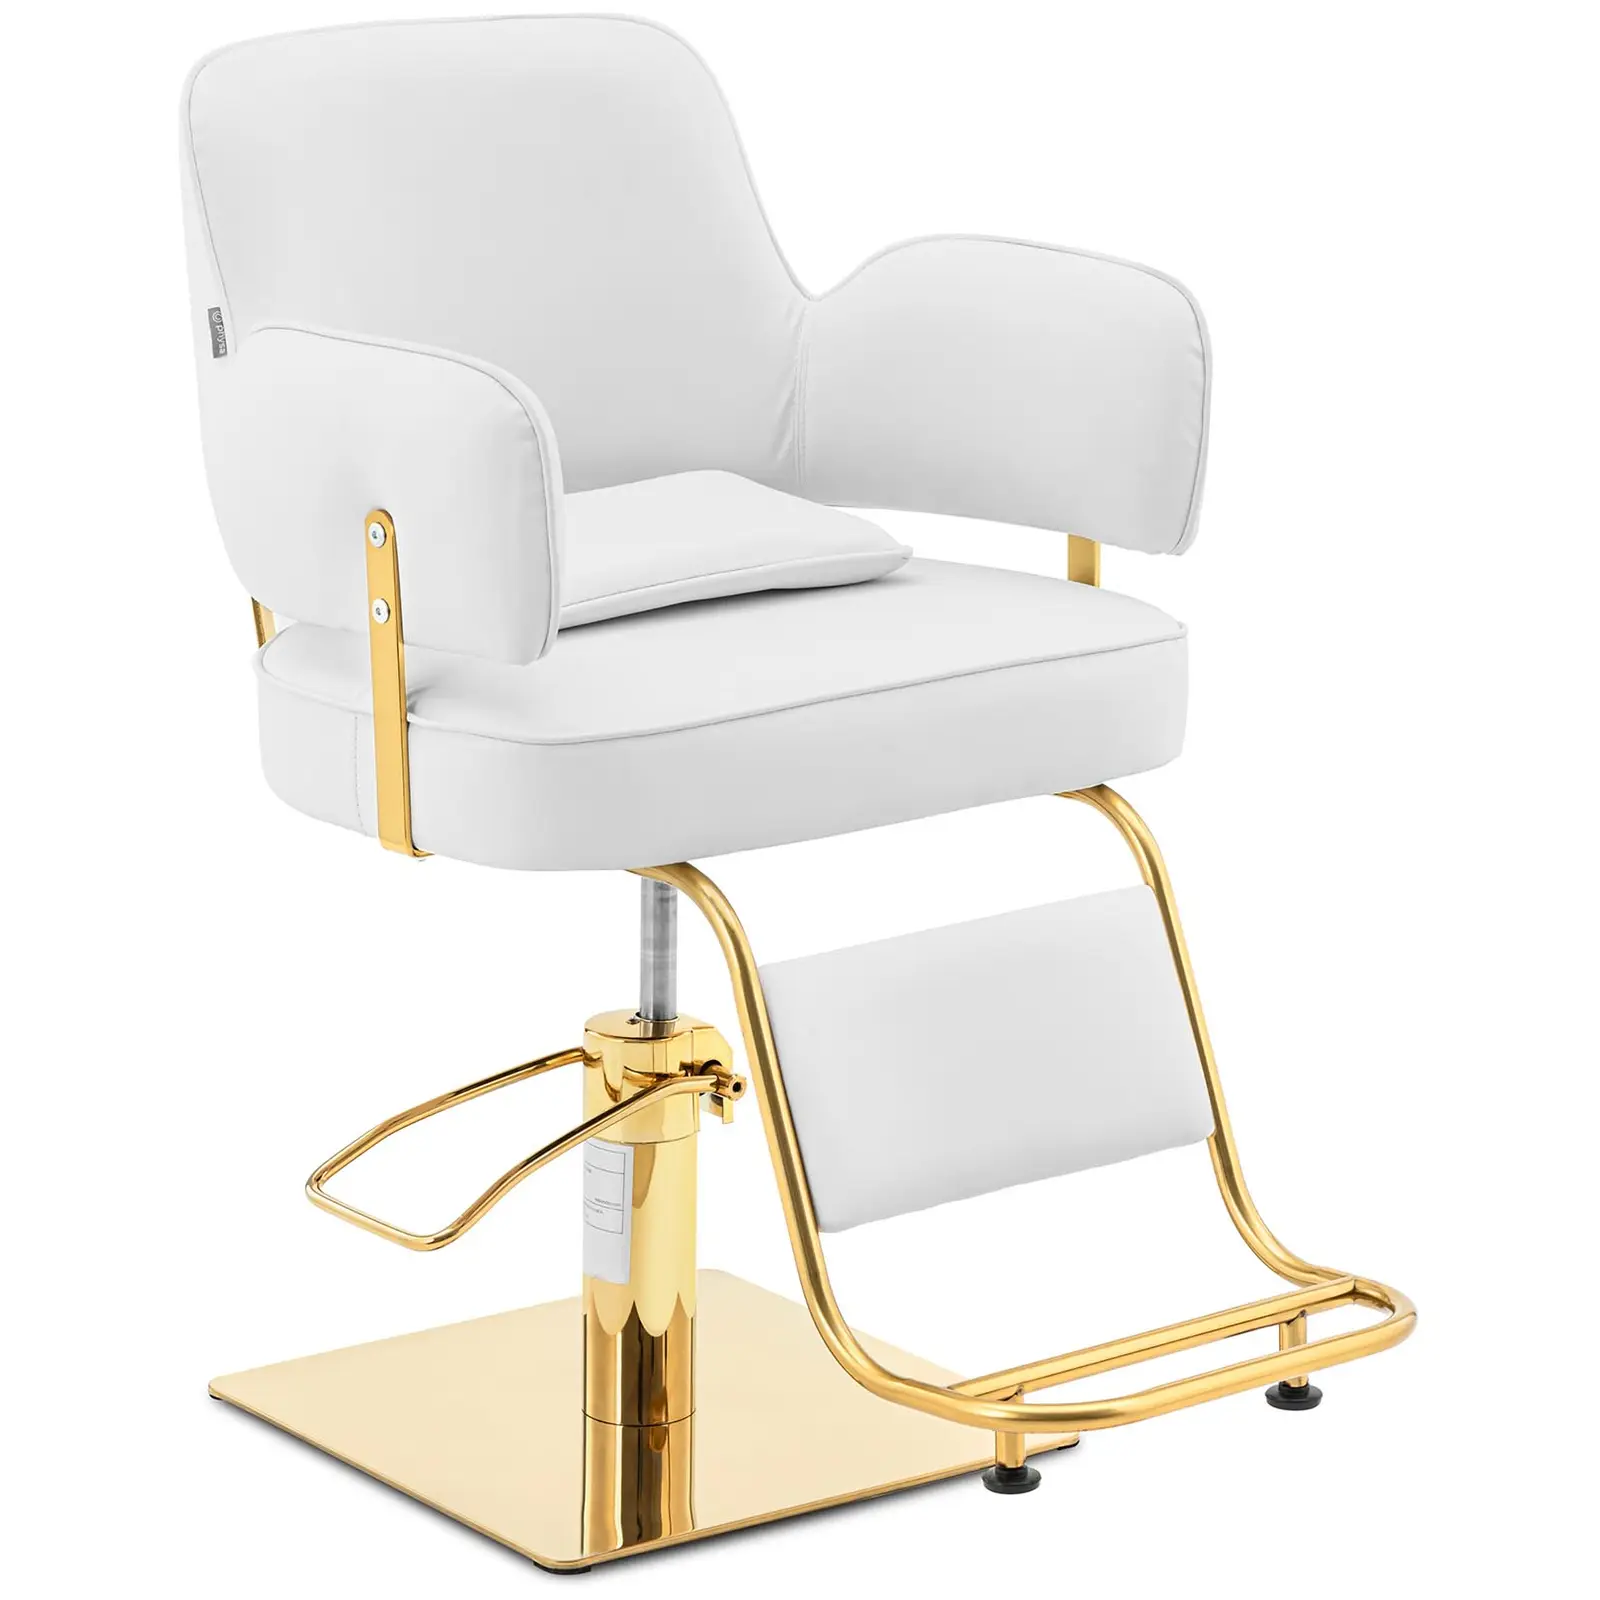 Cadeira de cabeleireiro com apoio para os pés - 890-1020 mm - 200 kg - Dourado, Branco